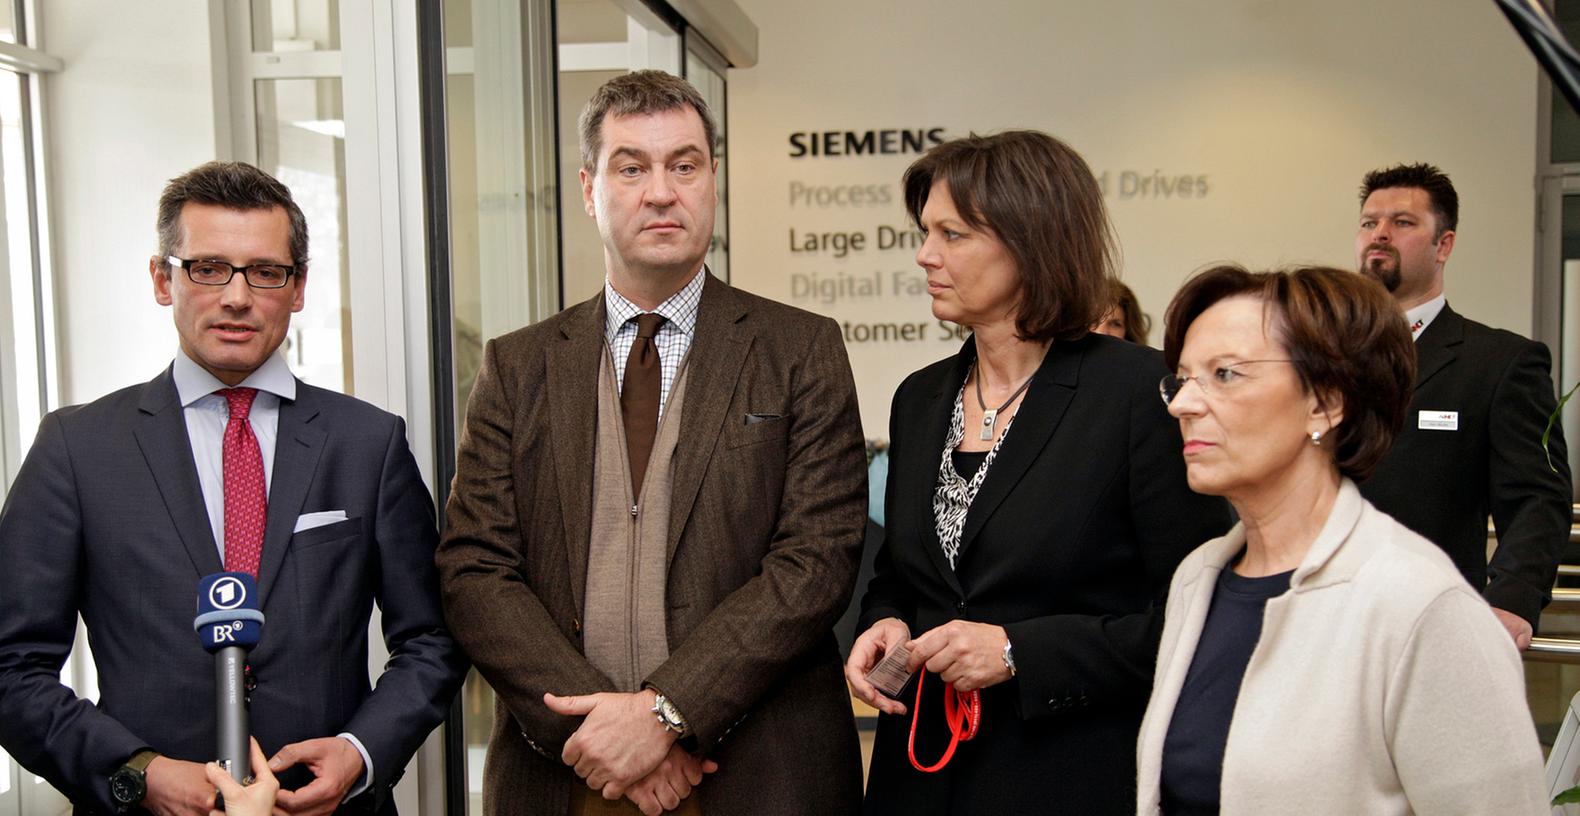 Ministerinnen Ilse Aigner und Emilia Müller besuchten in Begleitung von Markus Söder und Michael Fraas Siemens Nürnberg.